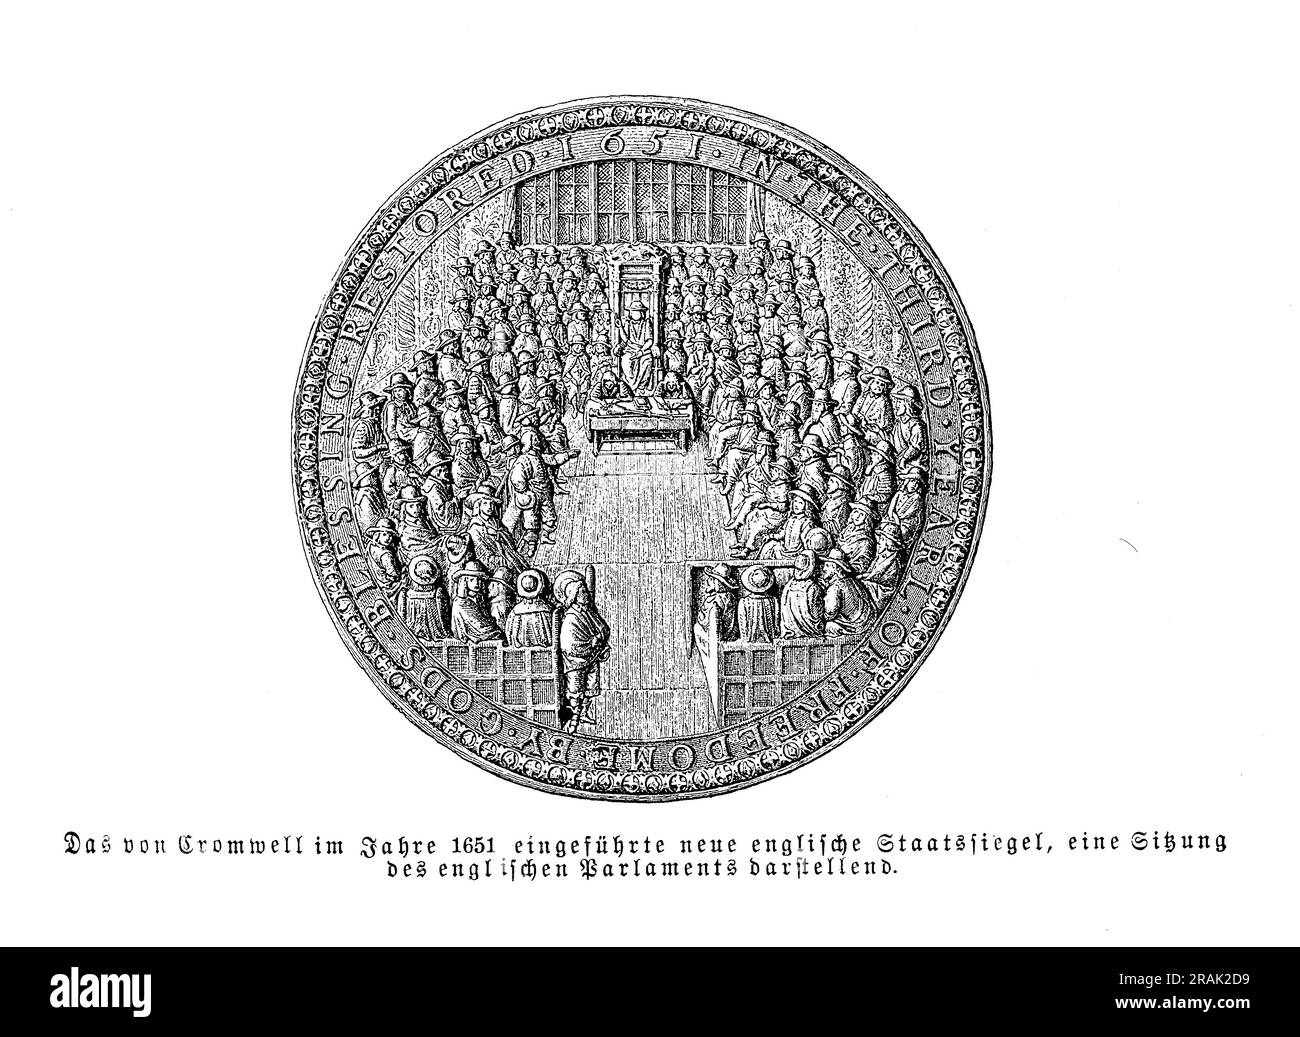 Das englische Regierungssiegel 1651 in der Cromwell Times mit Prägung einer Sitzung des englischen parlaments. Stockfoto